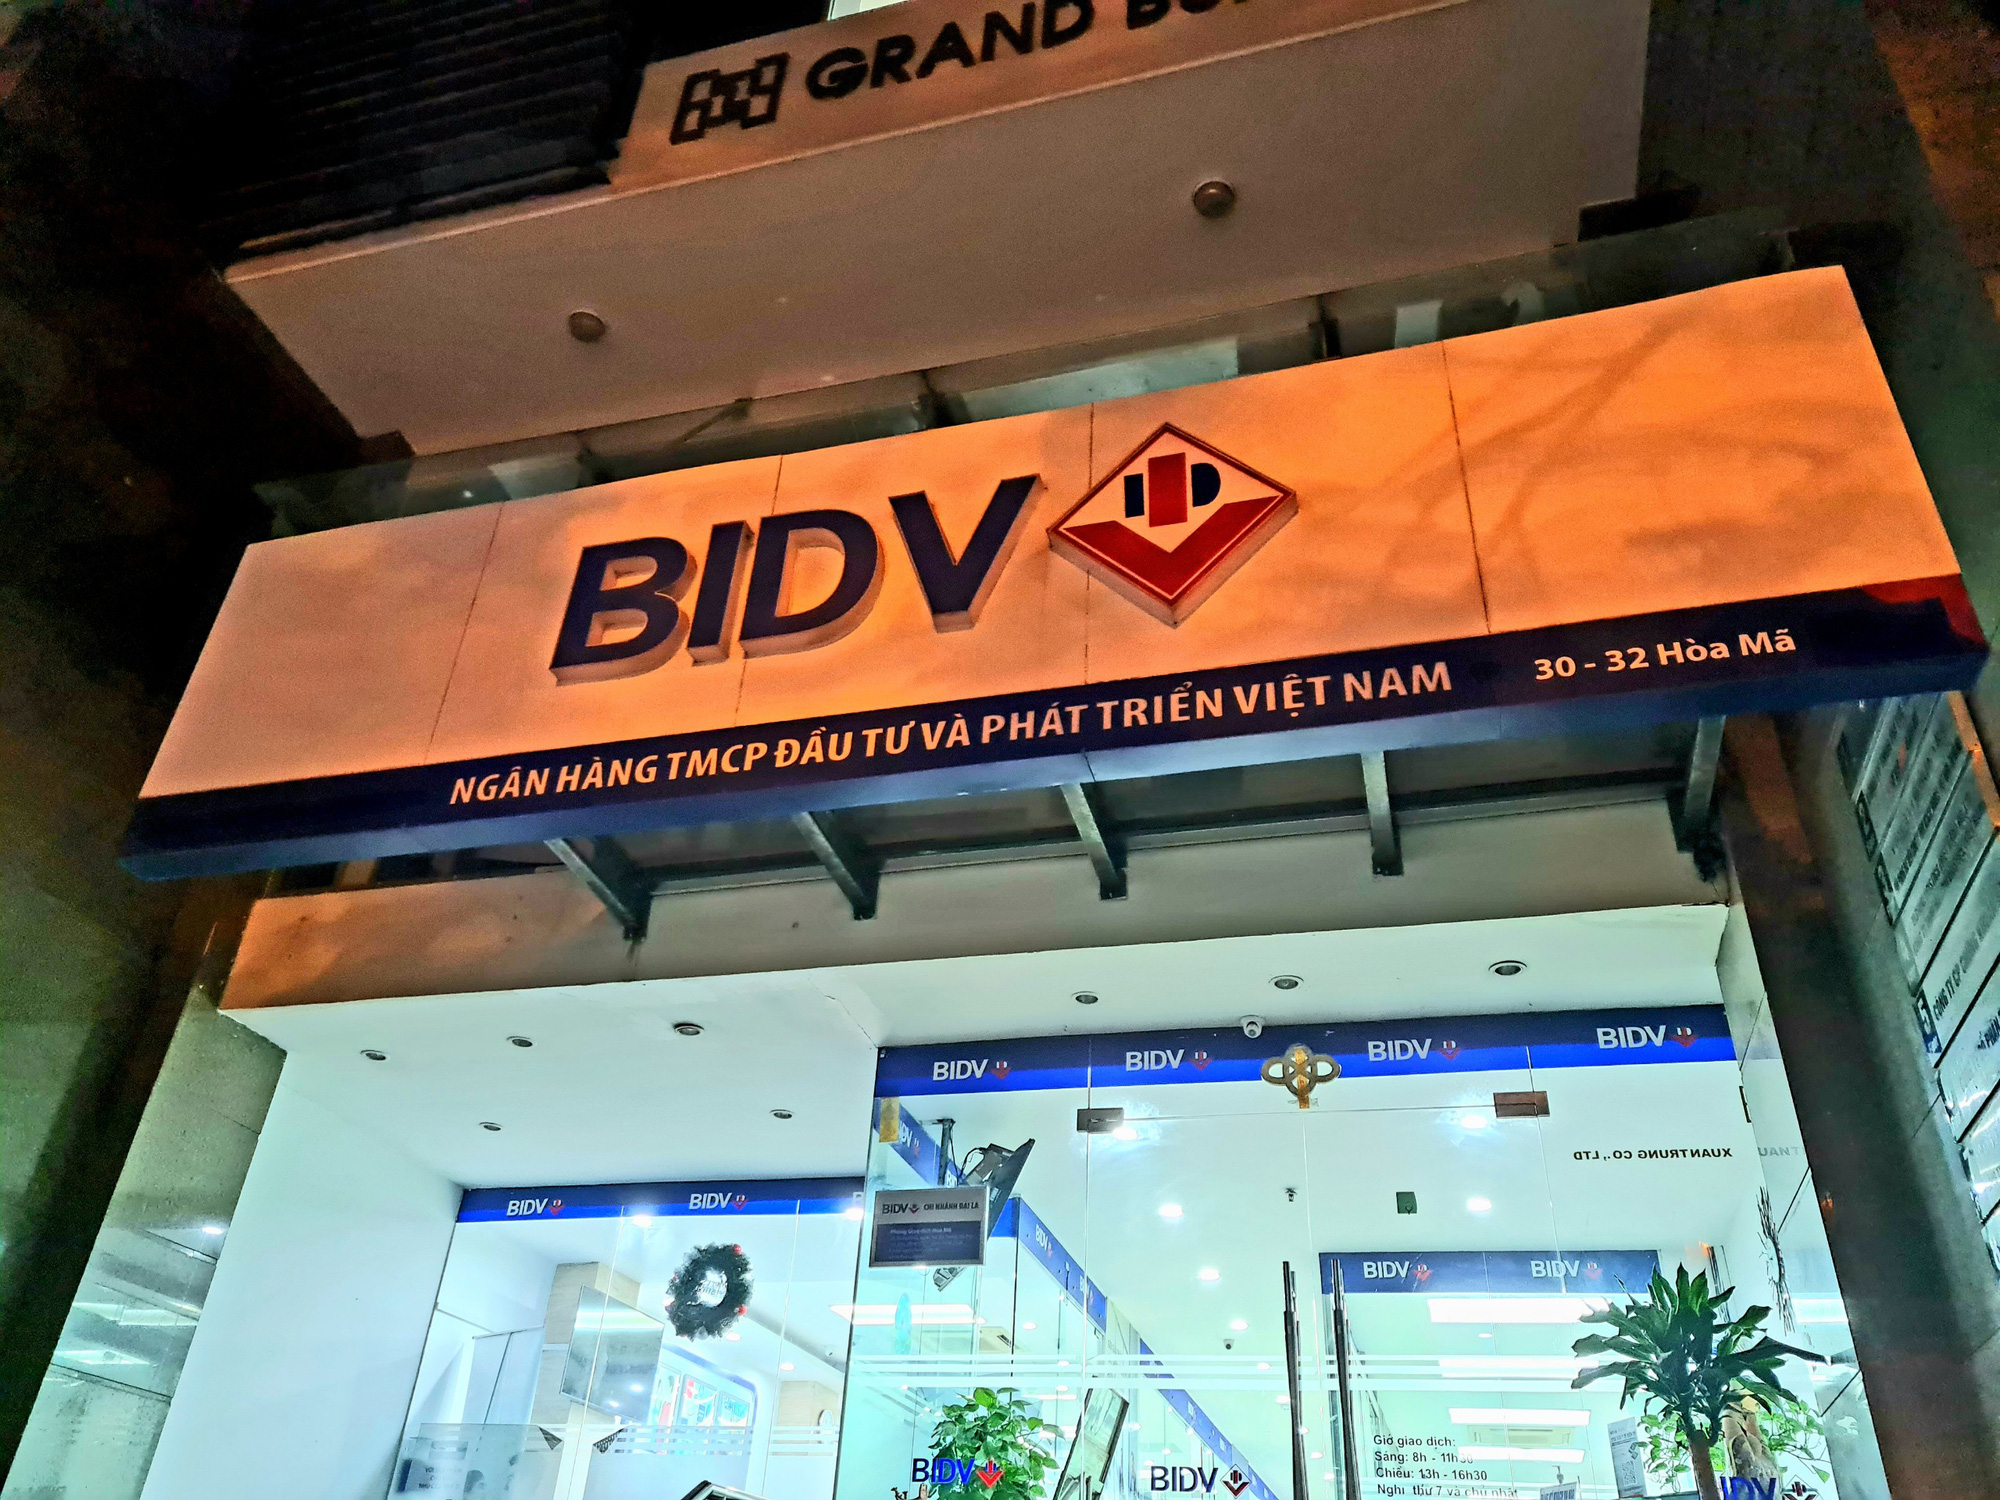 BIDV lấy ý kiến cổ đông về việc phát hành cổ phiếu trả cổ tức - Ảnh 1.